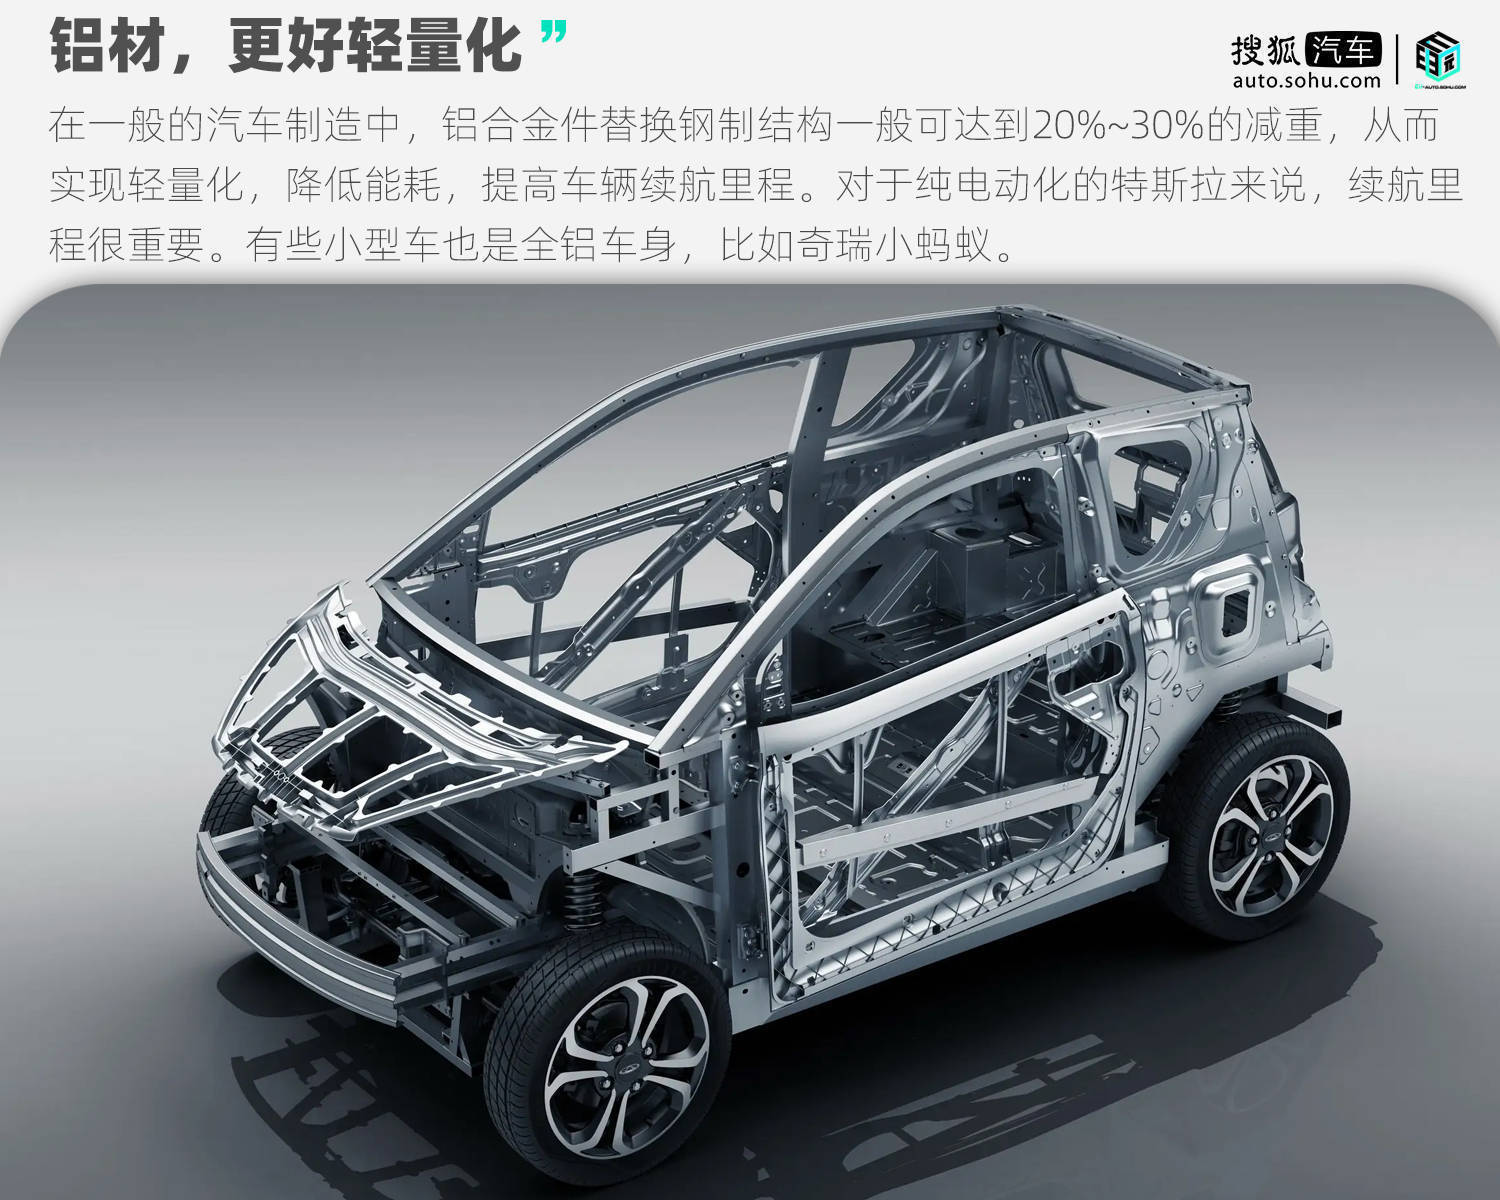 新款特斯拉Model 3谍照曝光 有望采用一体压铸车身技术_搜狐汽车_搜狐网